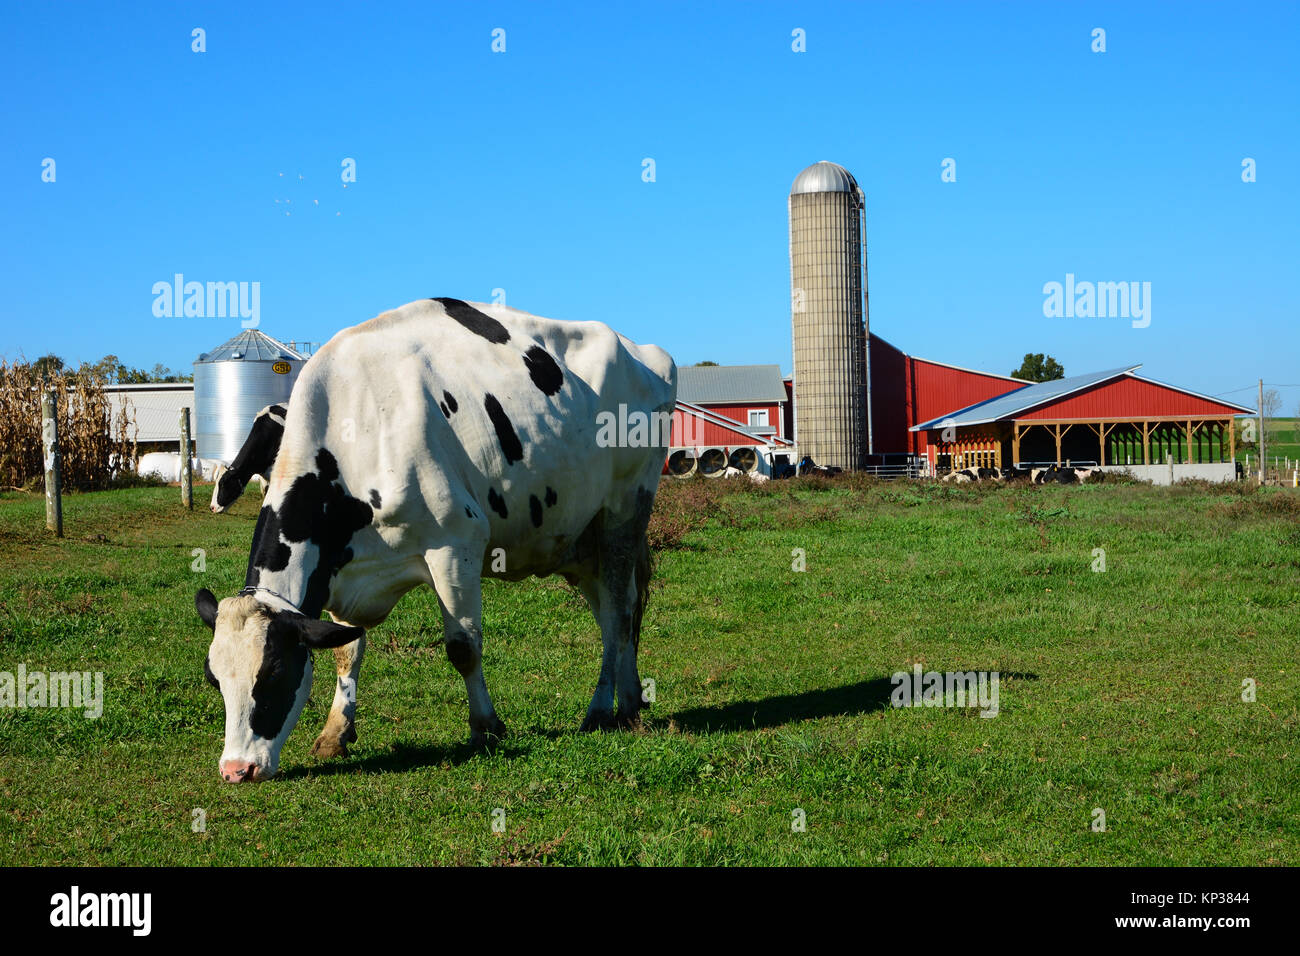 Schwarze und weiße Kuh stehend Grün essen Gras auf einer Amish Farm mit einem roten Scheune und Silo in Pennsylvania Dutch Country, Osten Amerika USA Stockfoto